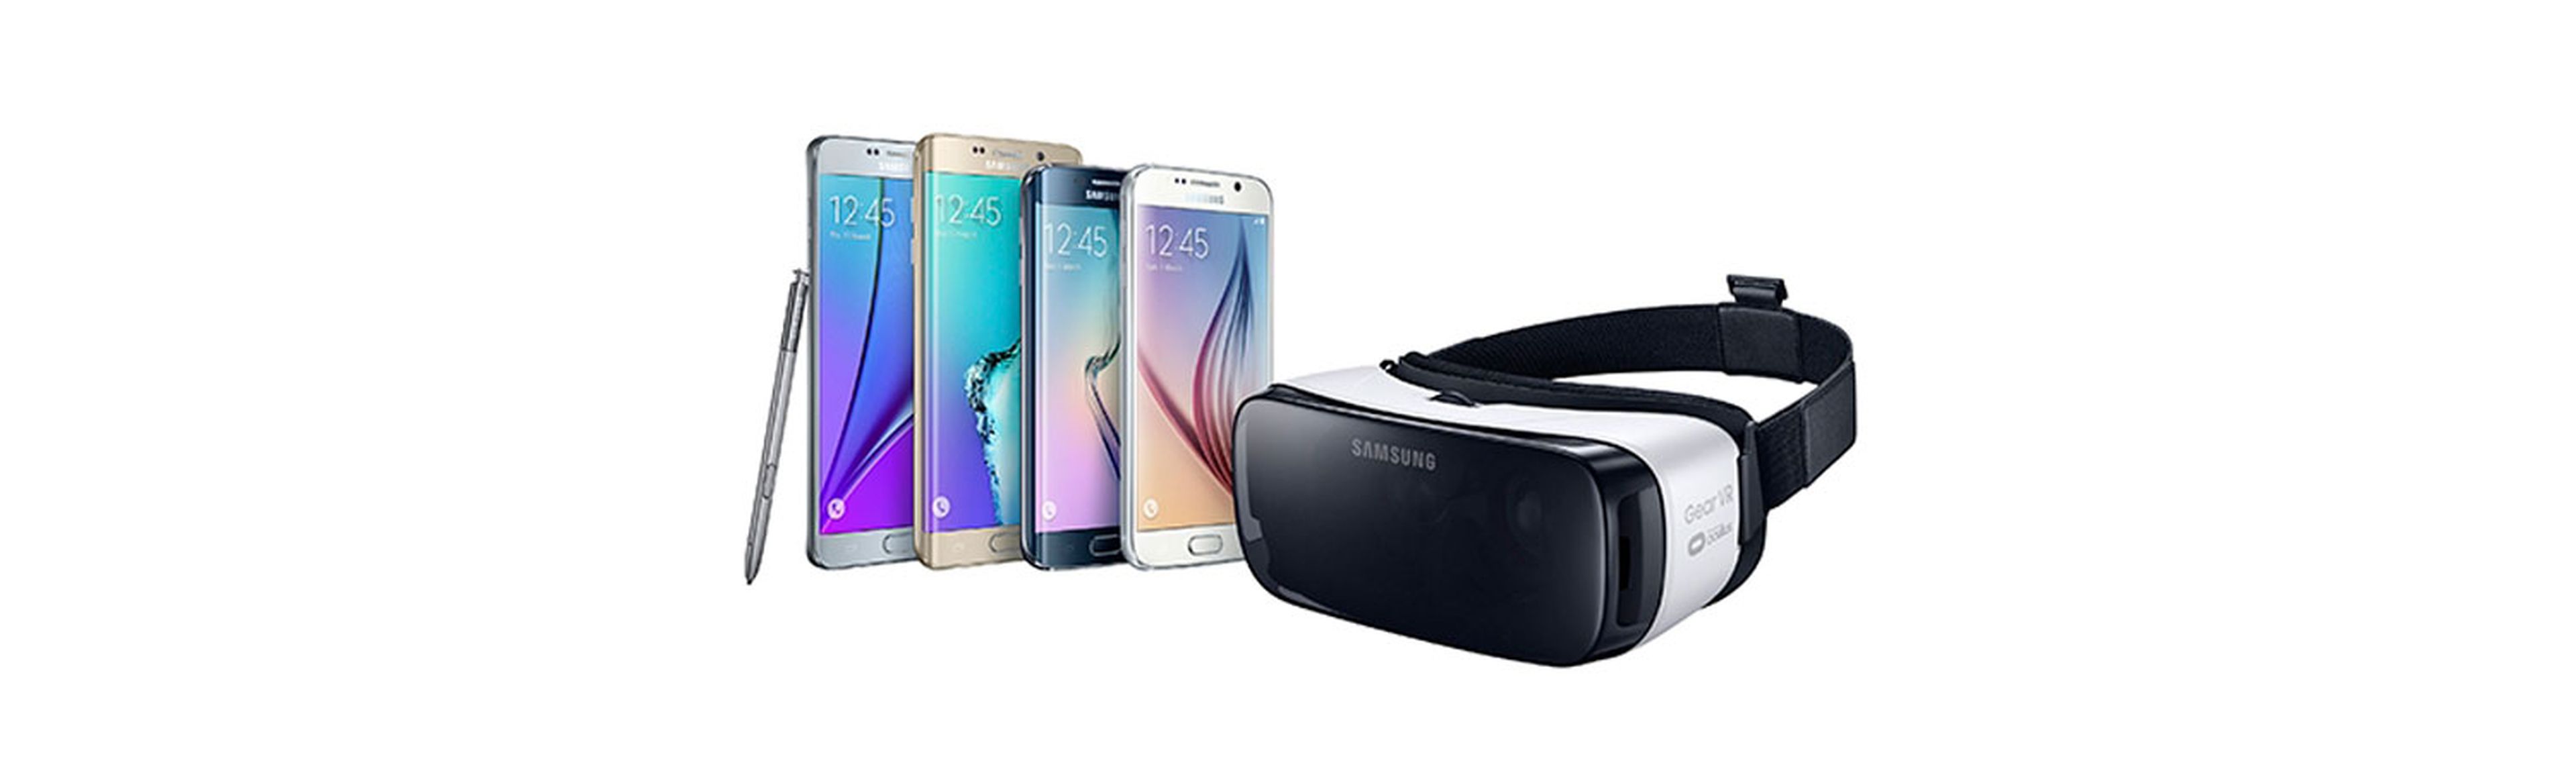 El modelo final de Gear VR será compatible con los últimos smartphones de Samsung